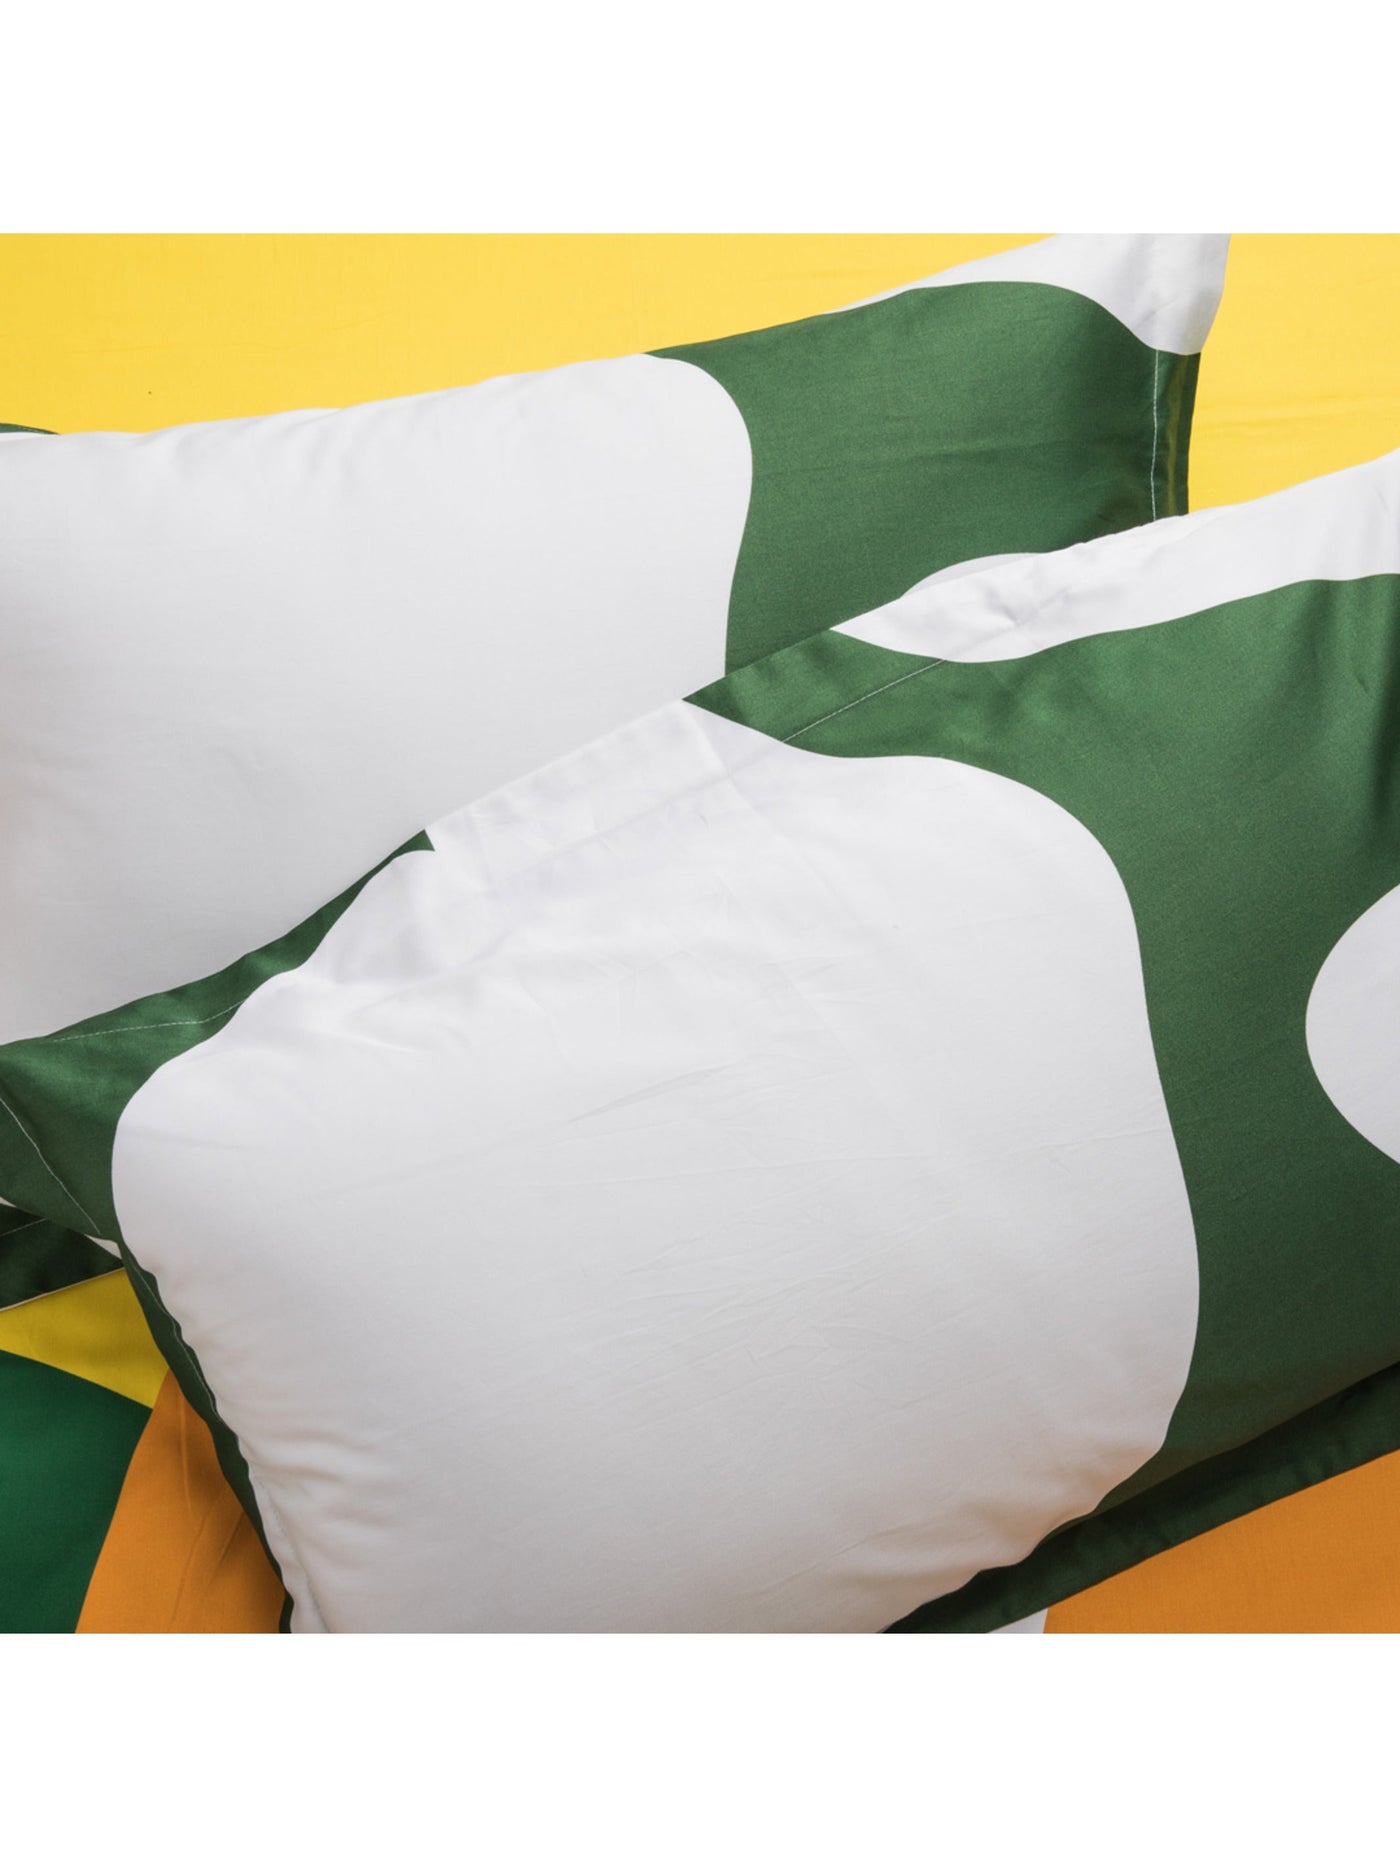 Bedsheet - The Matisse Meets Memphis In Yellow & Green Copy